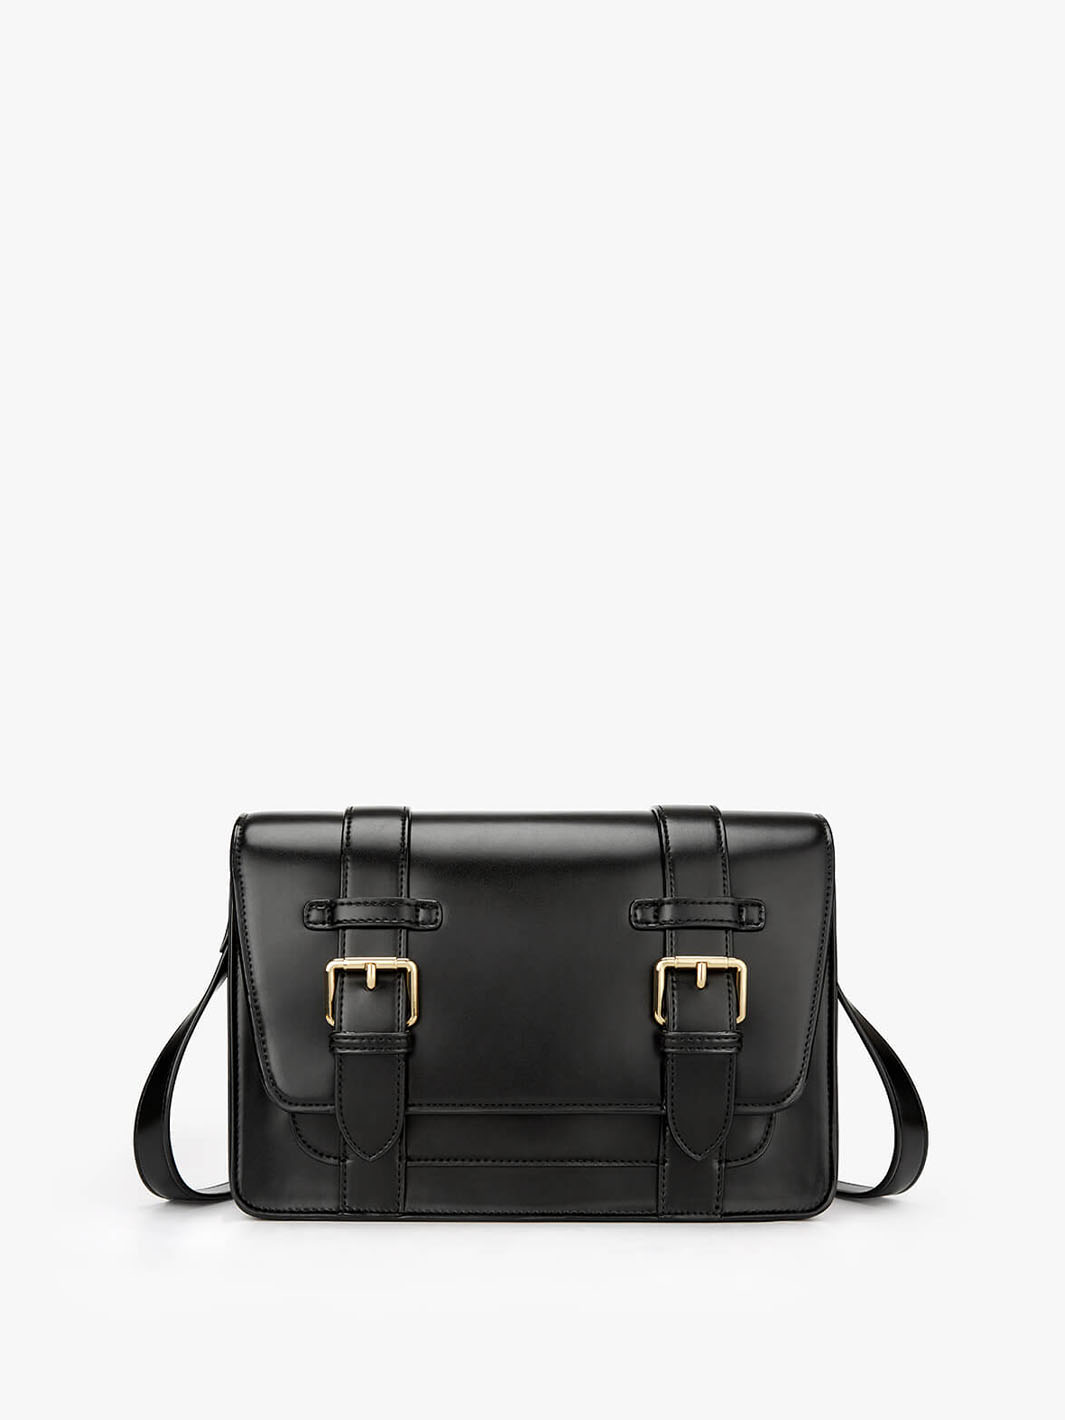 Ecosusi Julie Vintage Vegan Briefcase Black Laptop Bag for Women 15.6 inch Black